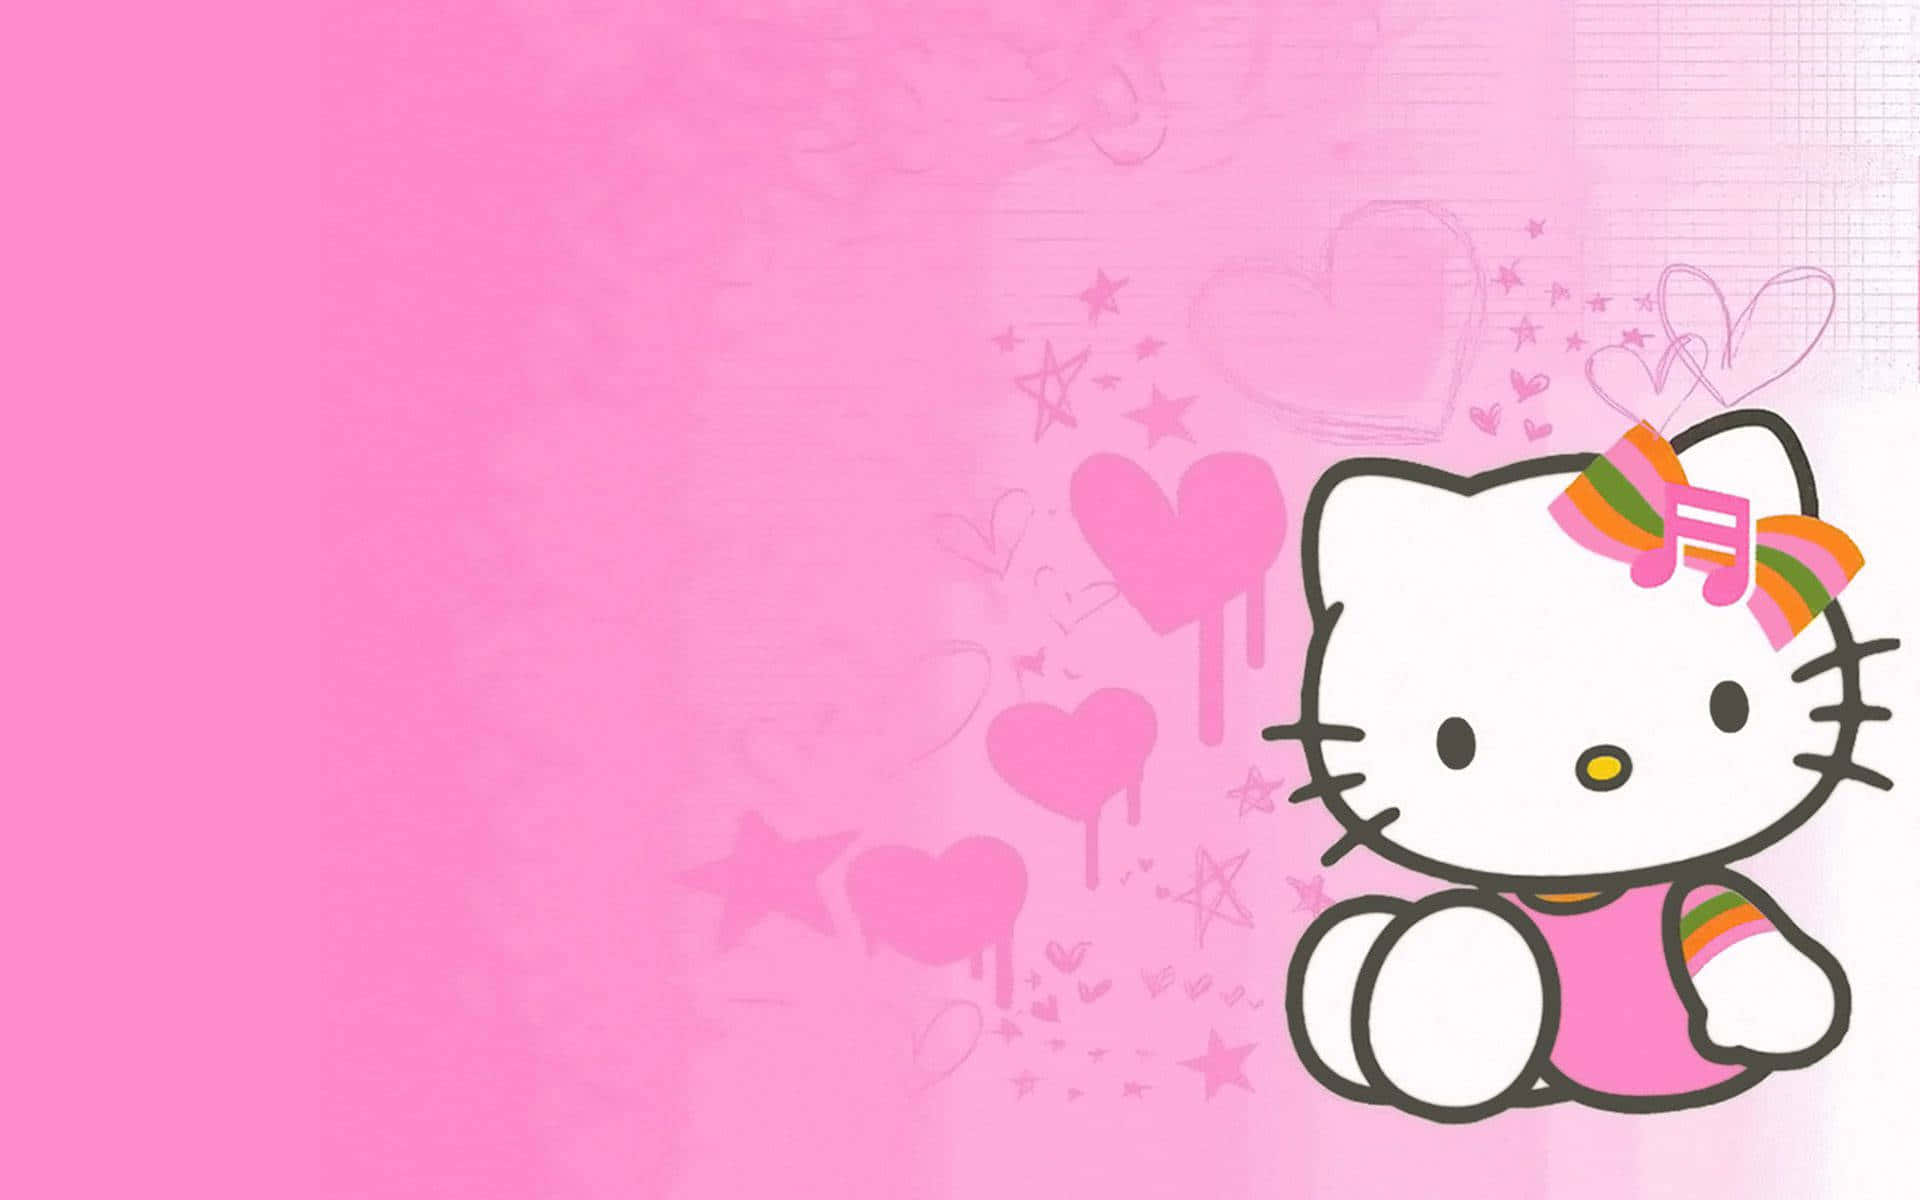 100+] Hello Kitty Aesthetic Backgrounds